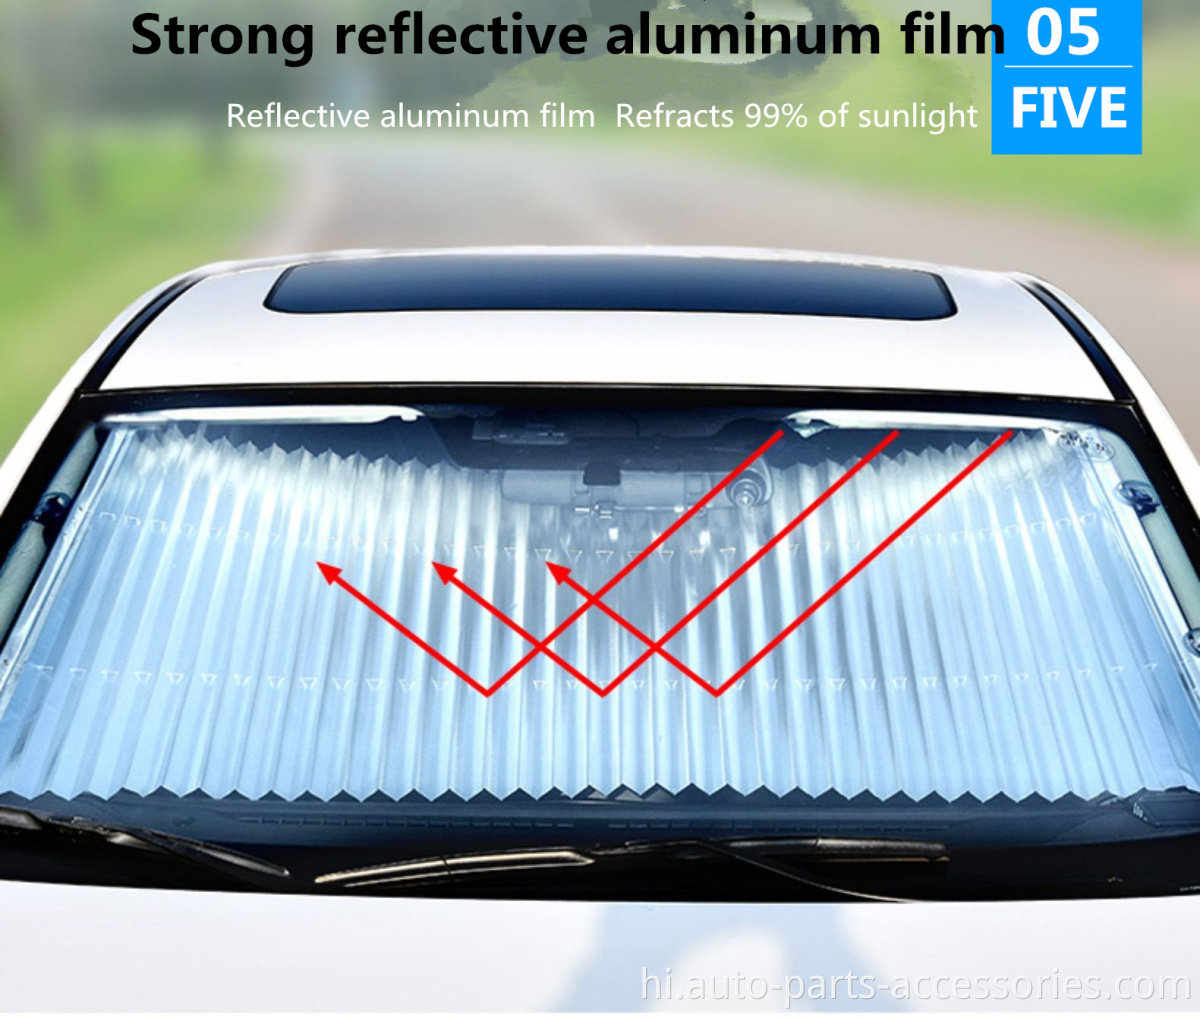 सामने की खिड़की सुरक्षात्मक वैक्यूम सक्शन आसान स्थापित करें विंडशील्ड विंडो सन शेड कार को हटा दें